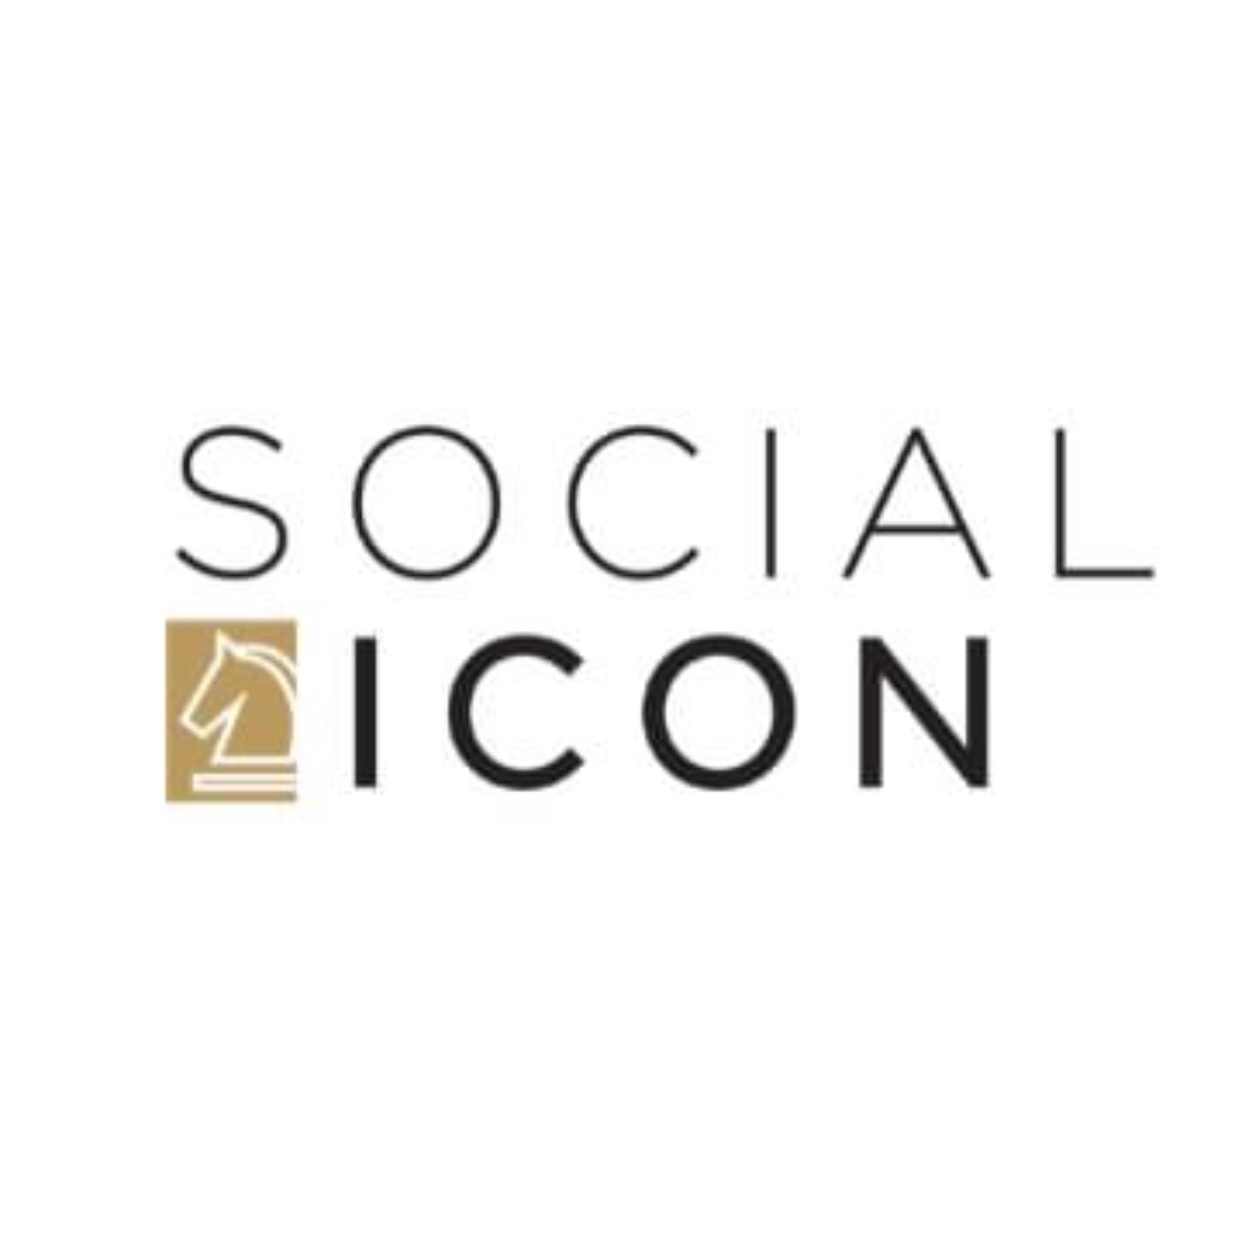 Social ICON